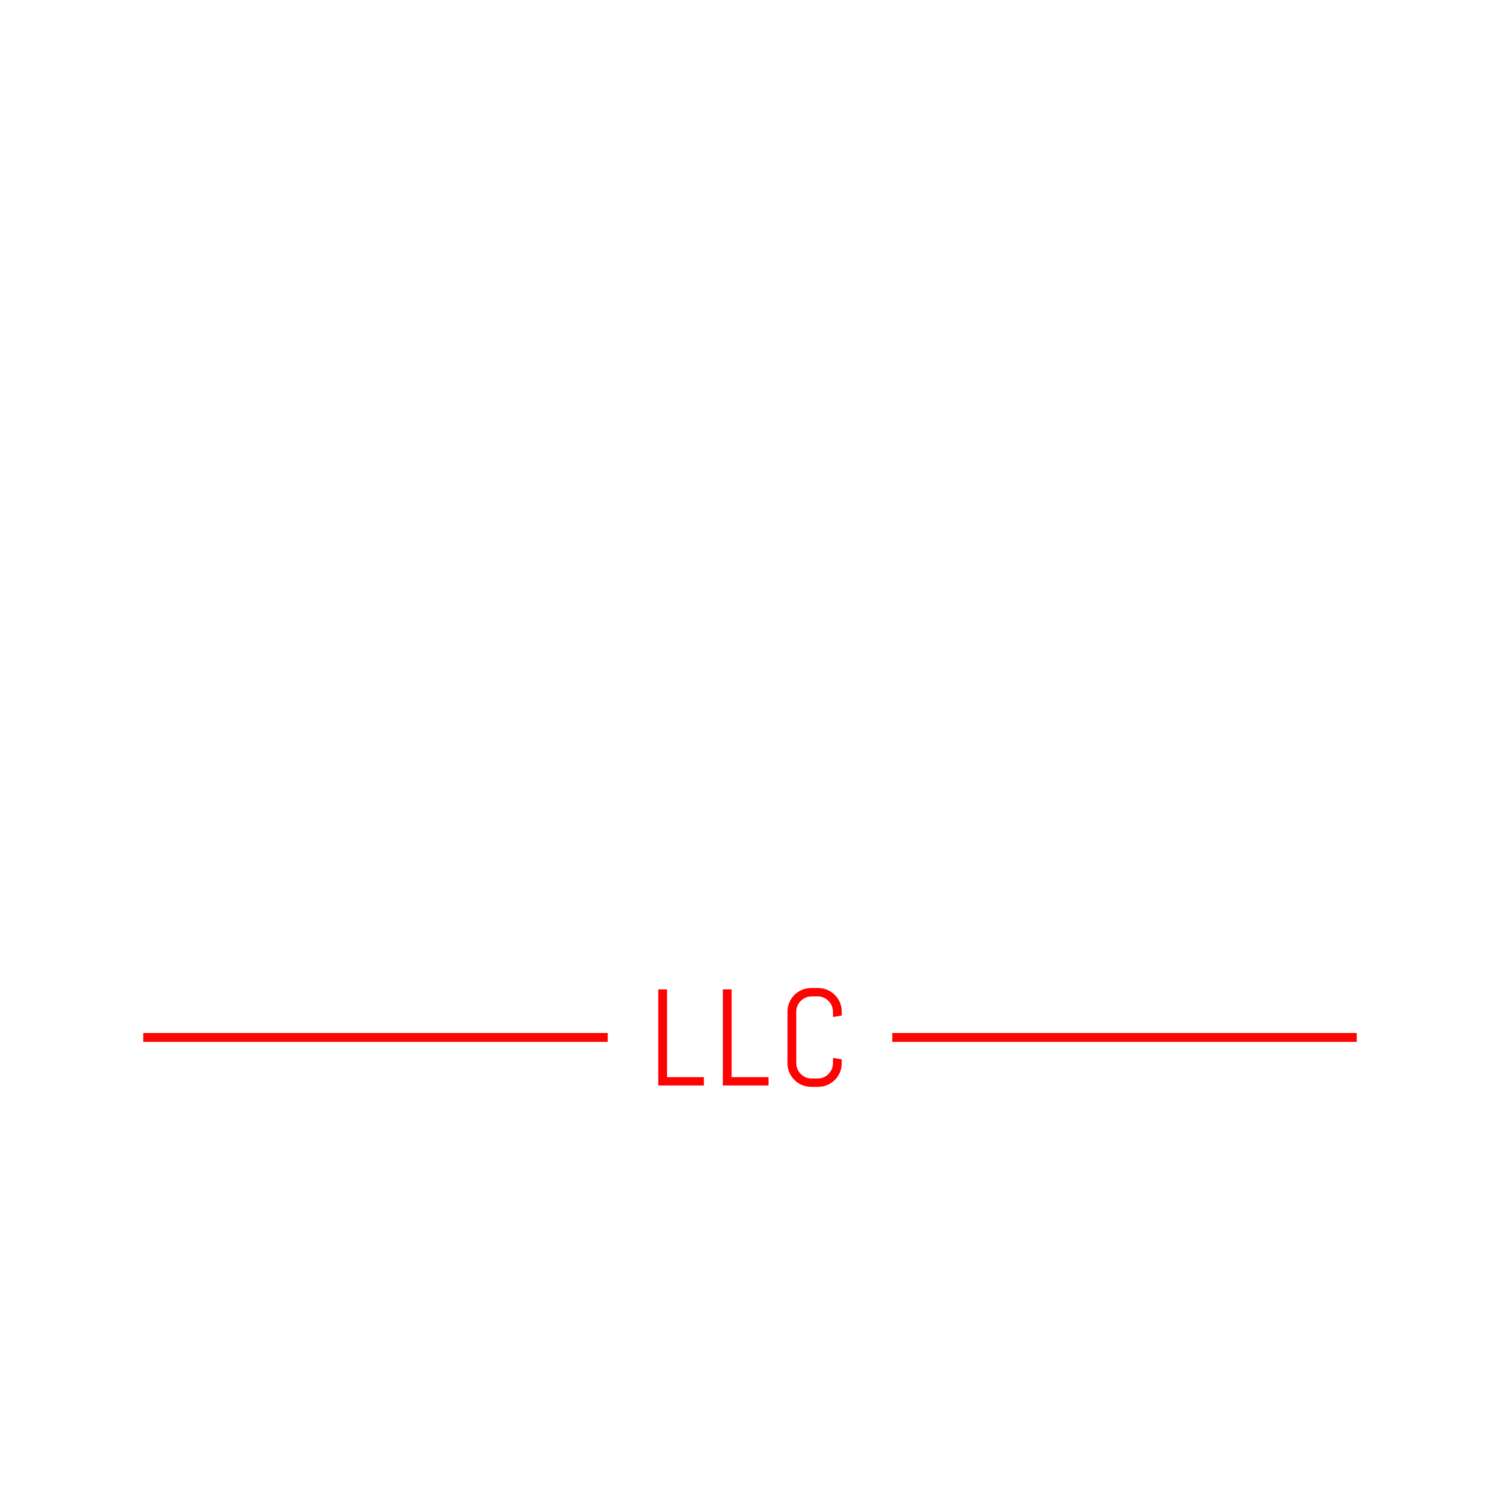 Pithy Platypus, LLC